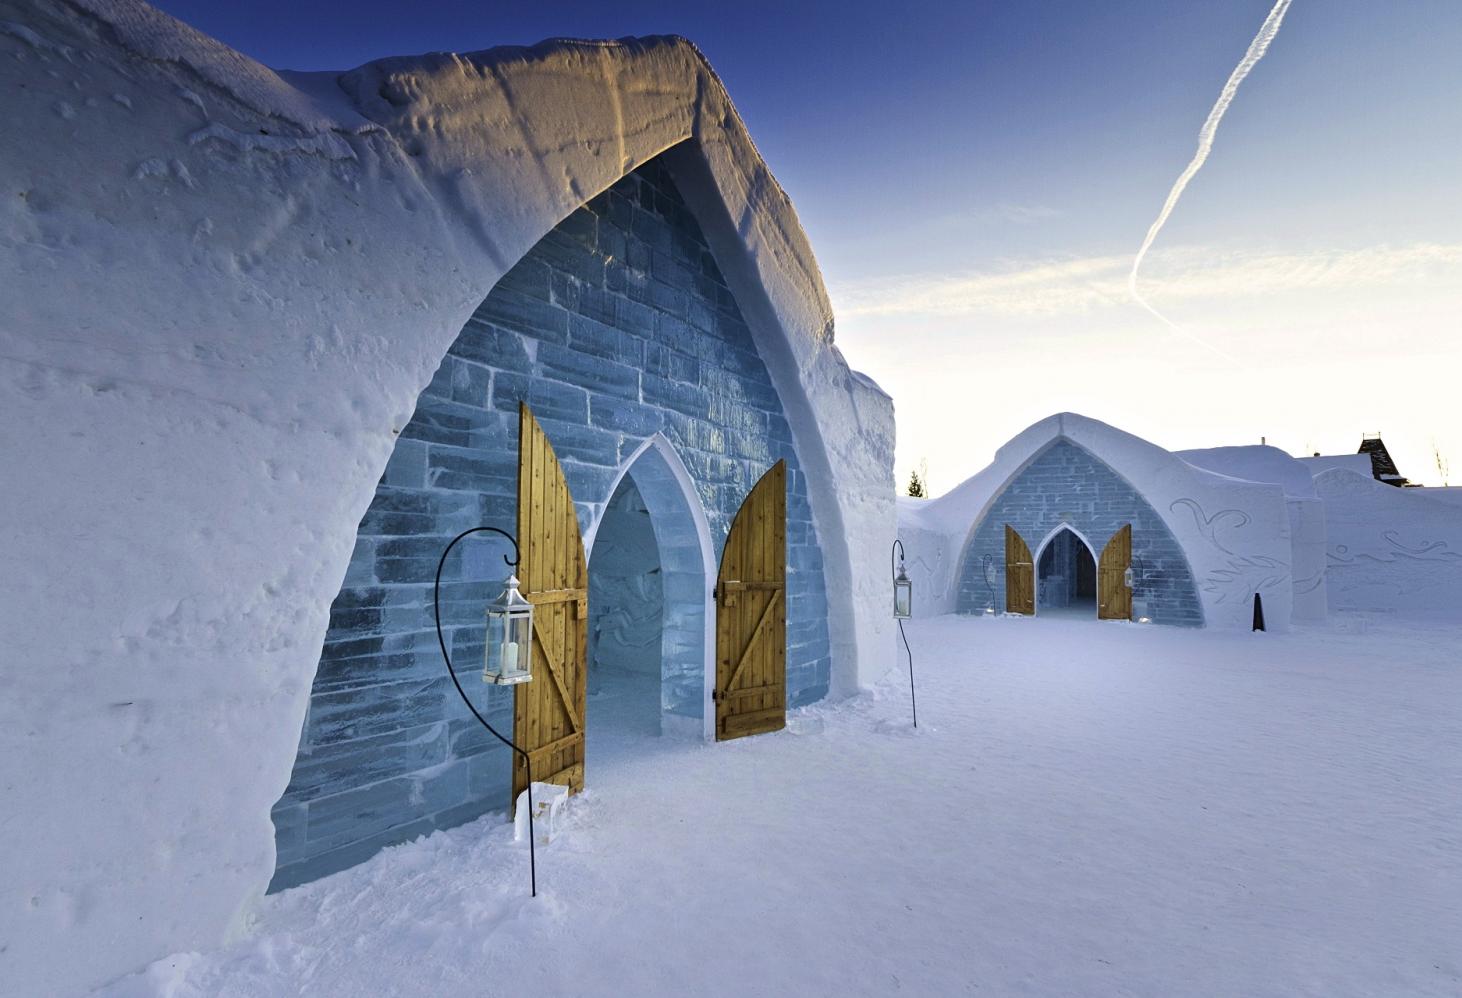 Hôtel de Glace — ледяной отель в Квебеке, Канада